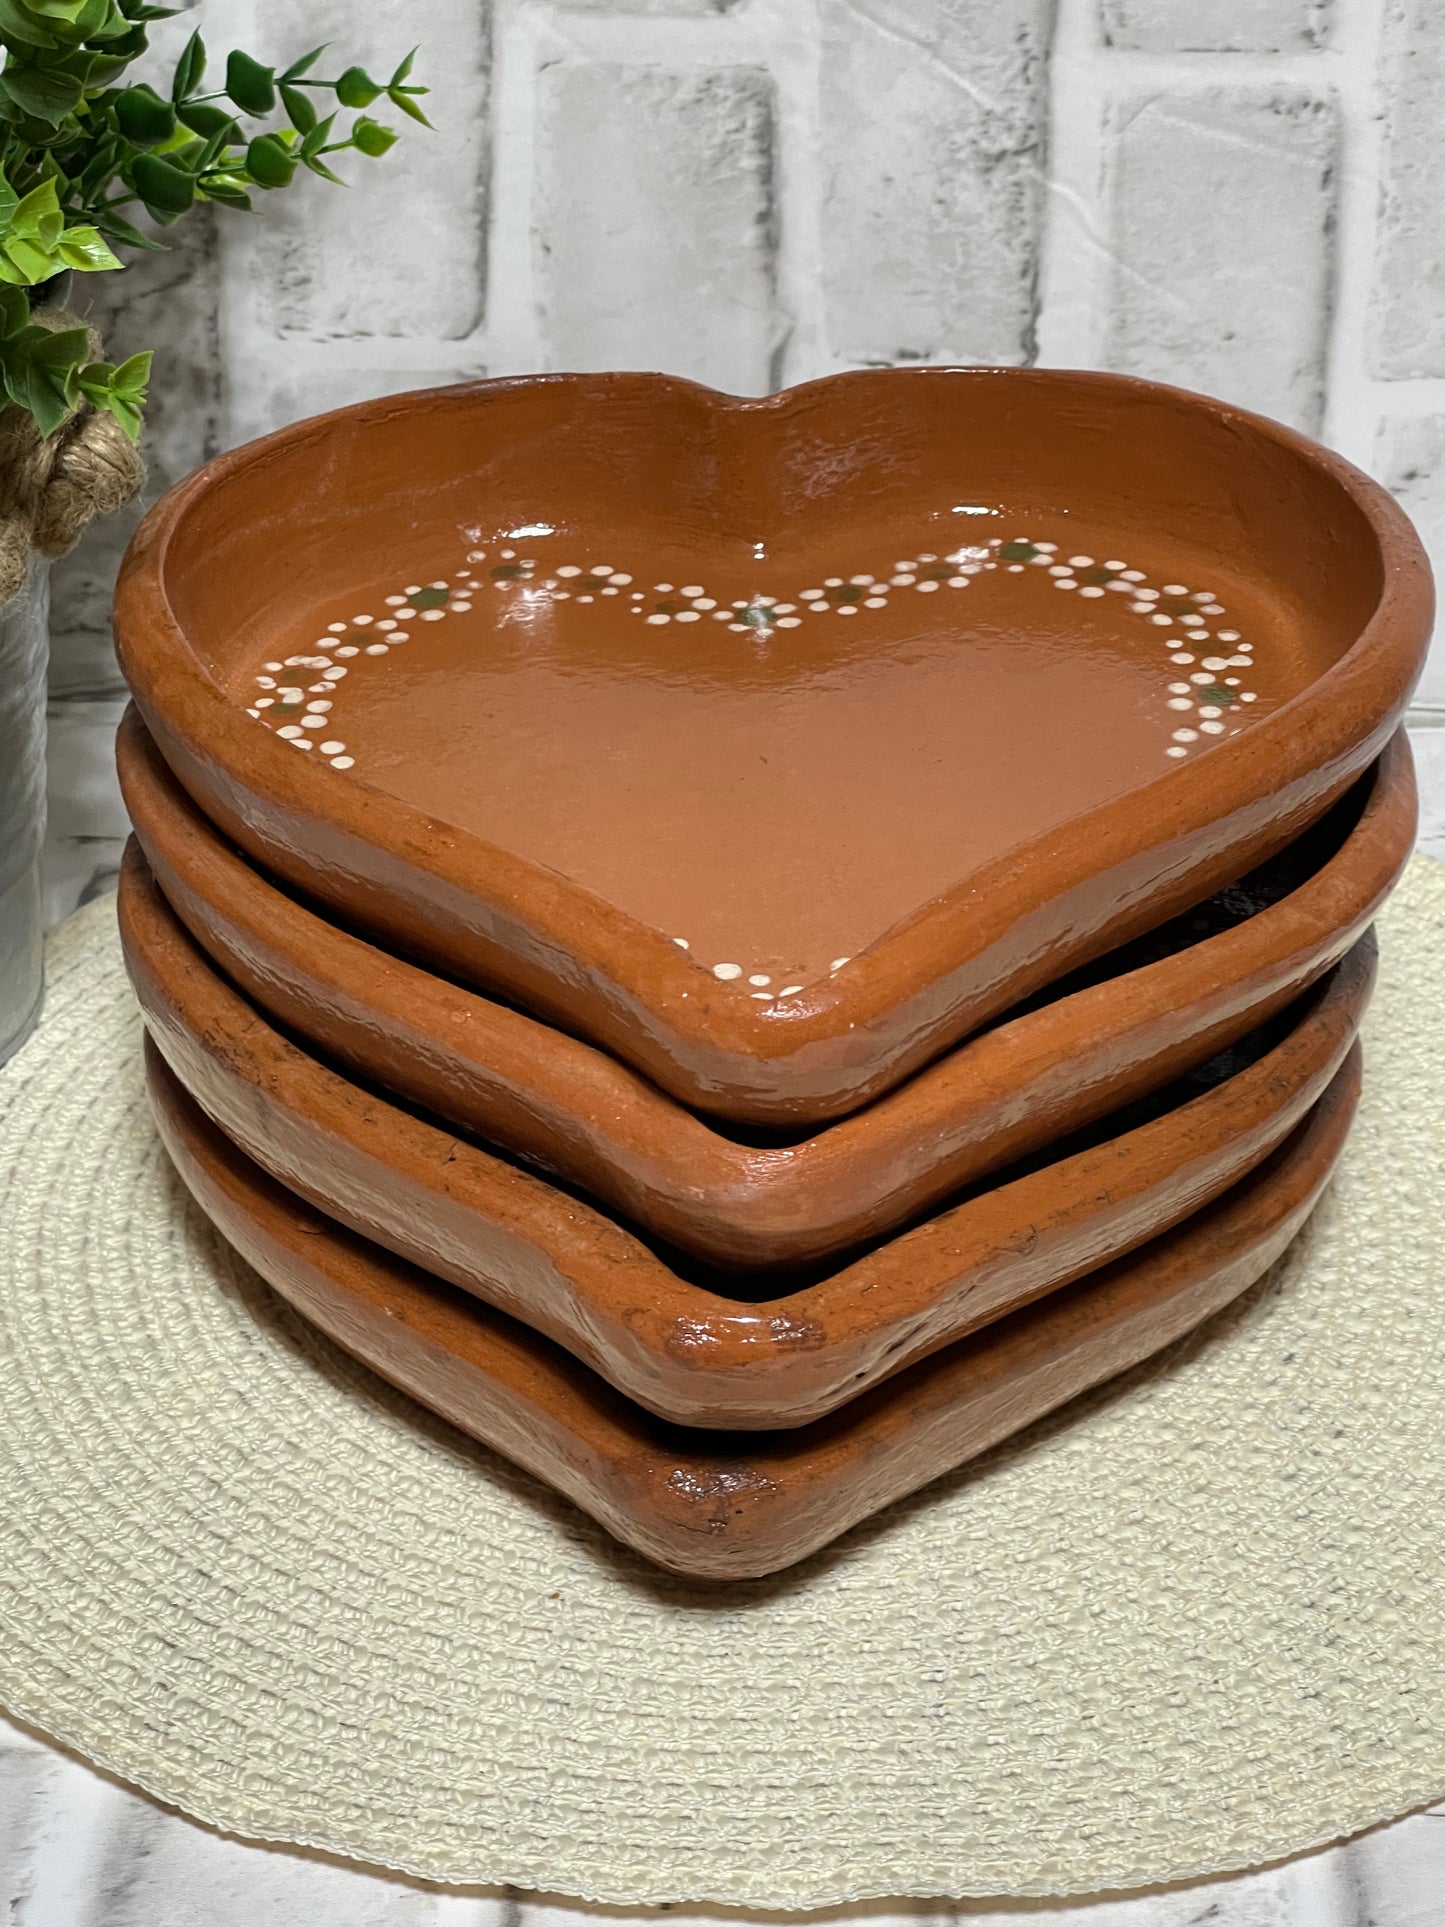 Terracotta corazón plate/Plato corazon 9” de barro-2pc set